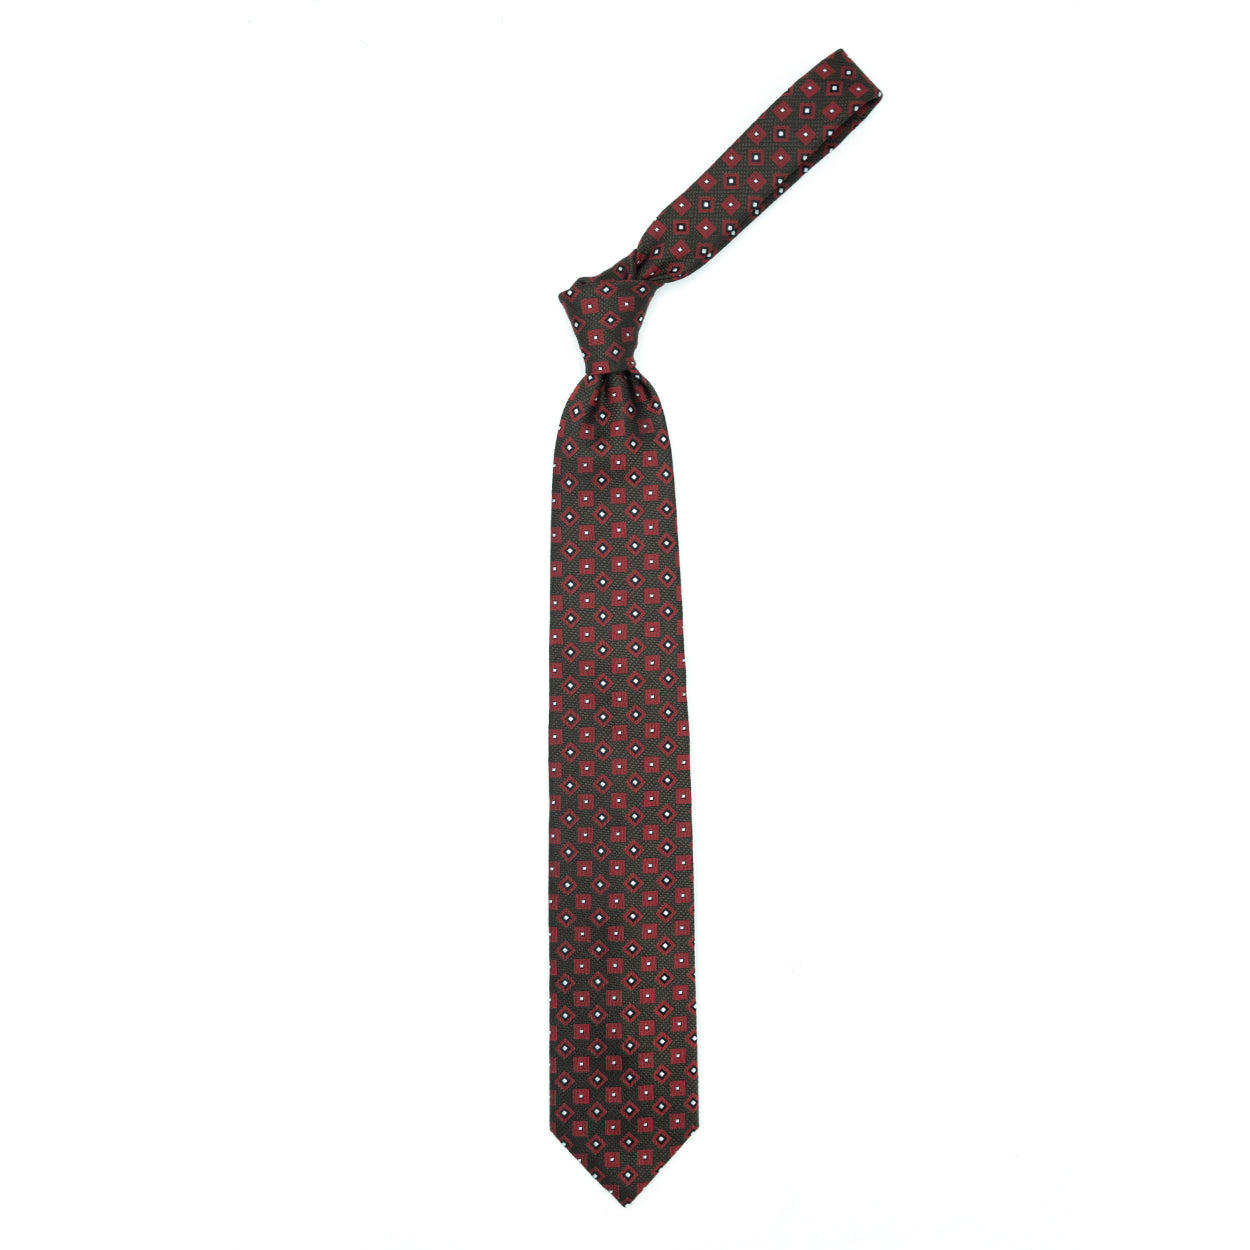 Cravatta marrone con quadrati bordeaux